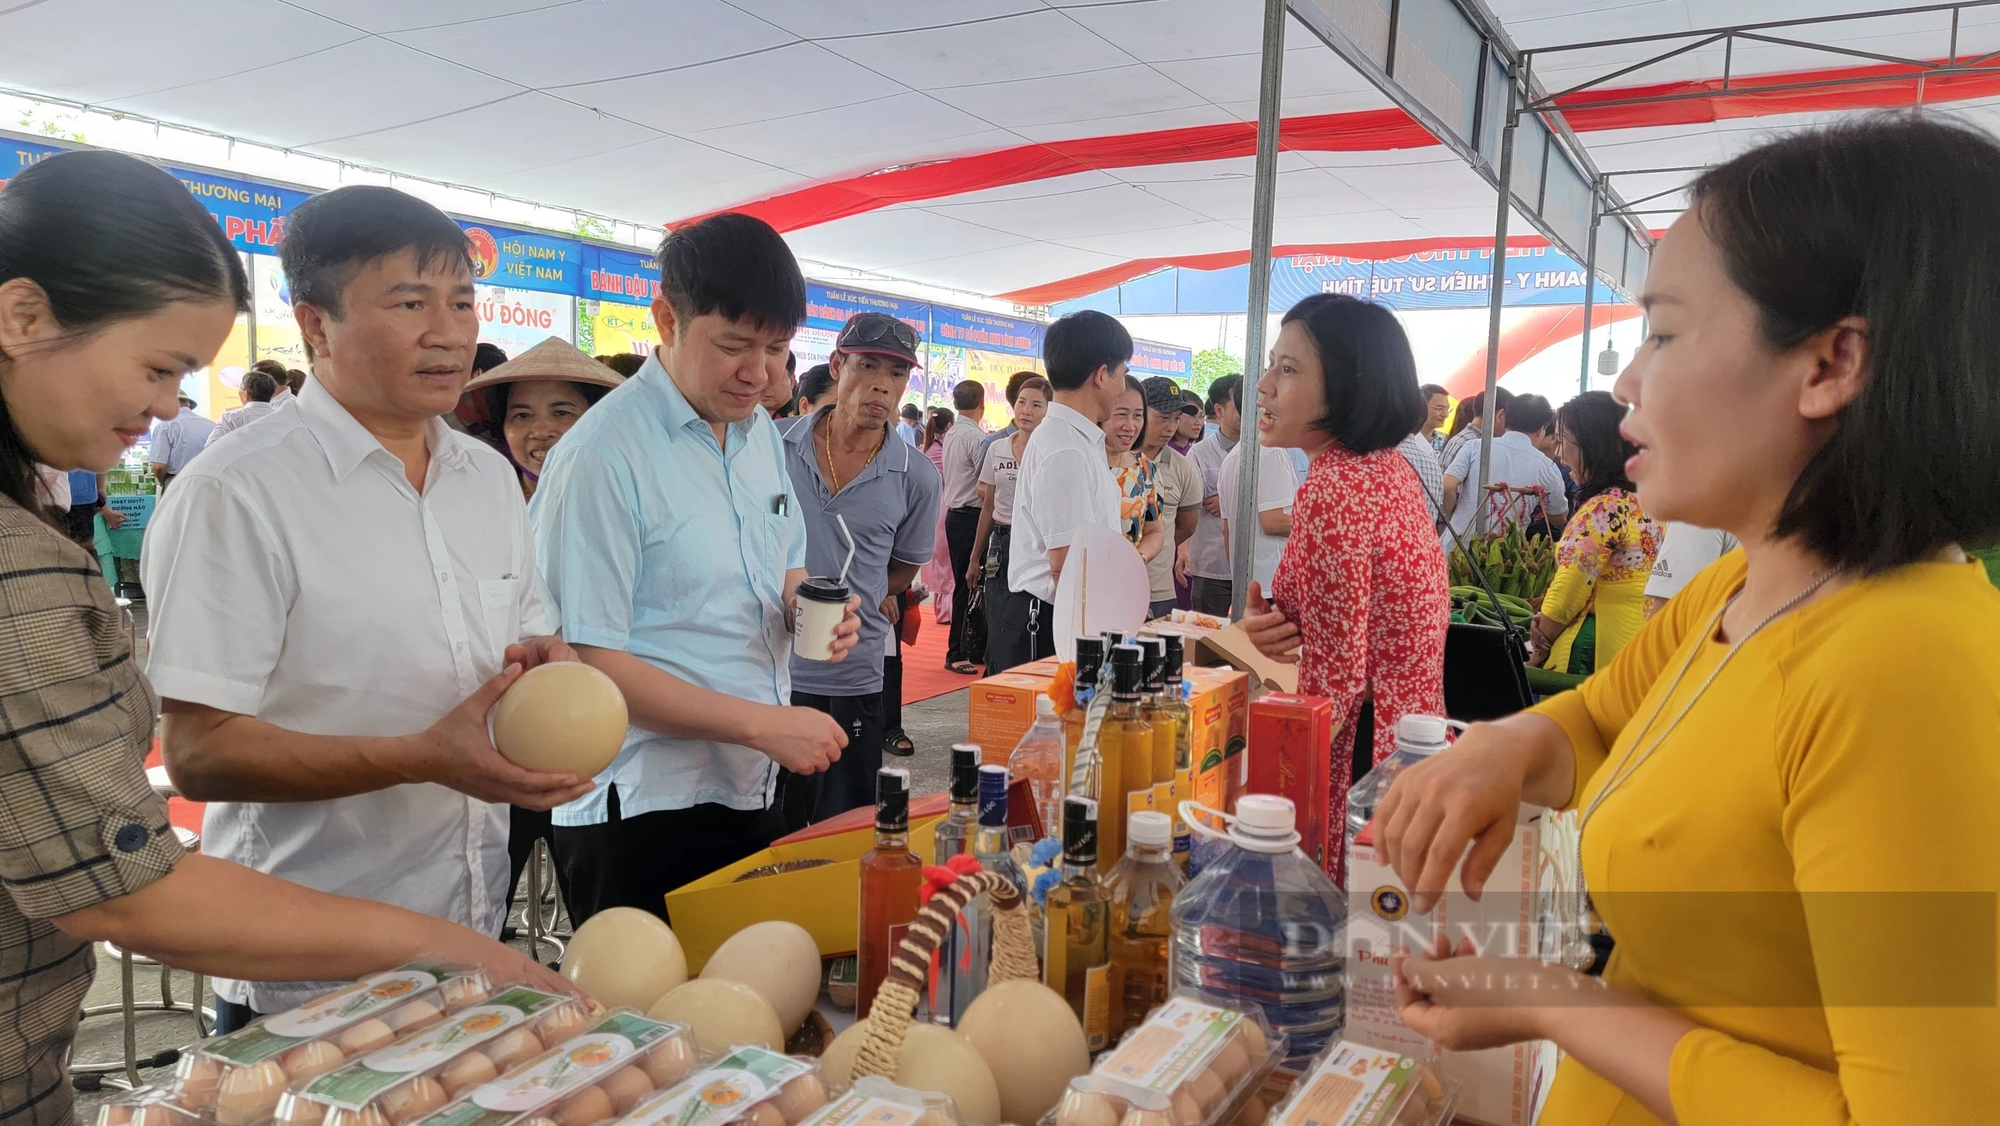 Hải Dương: Nông sản OCOP huyện Cẩm Giàng đang trưng bày giới thiệu tại lễ hội đền Bia- Ảnh 6.